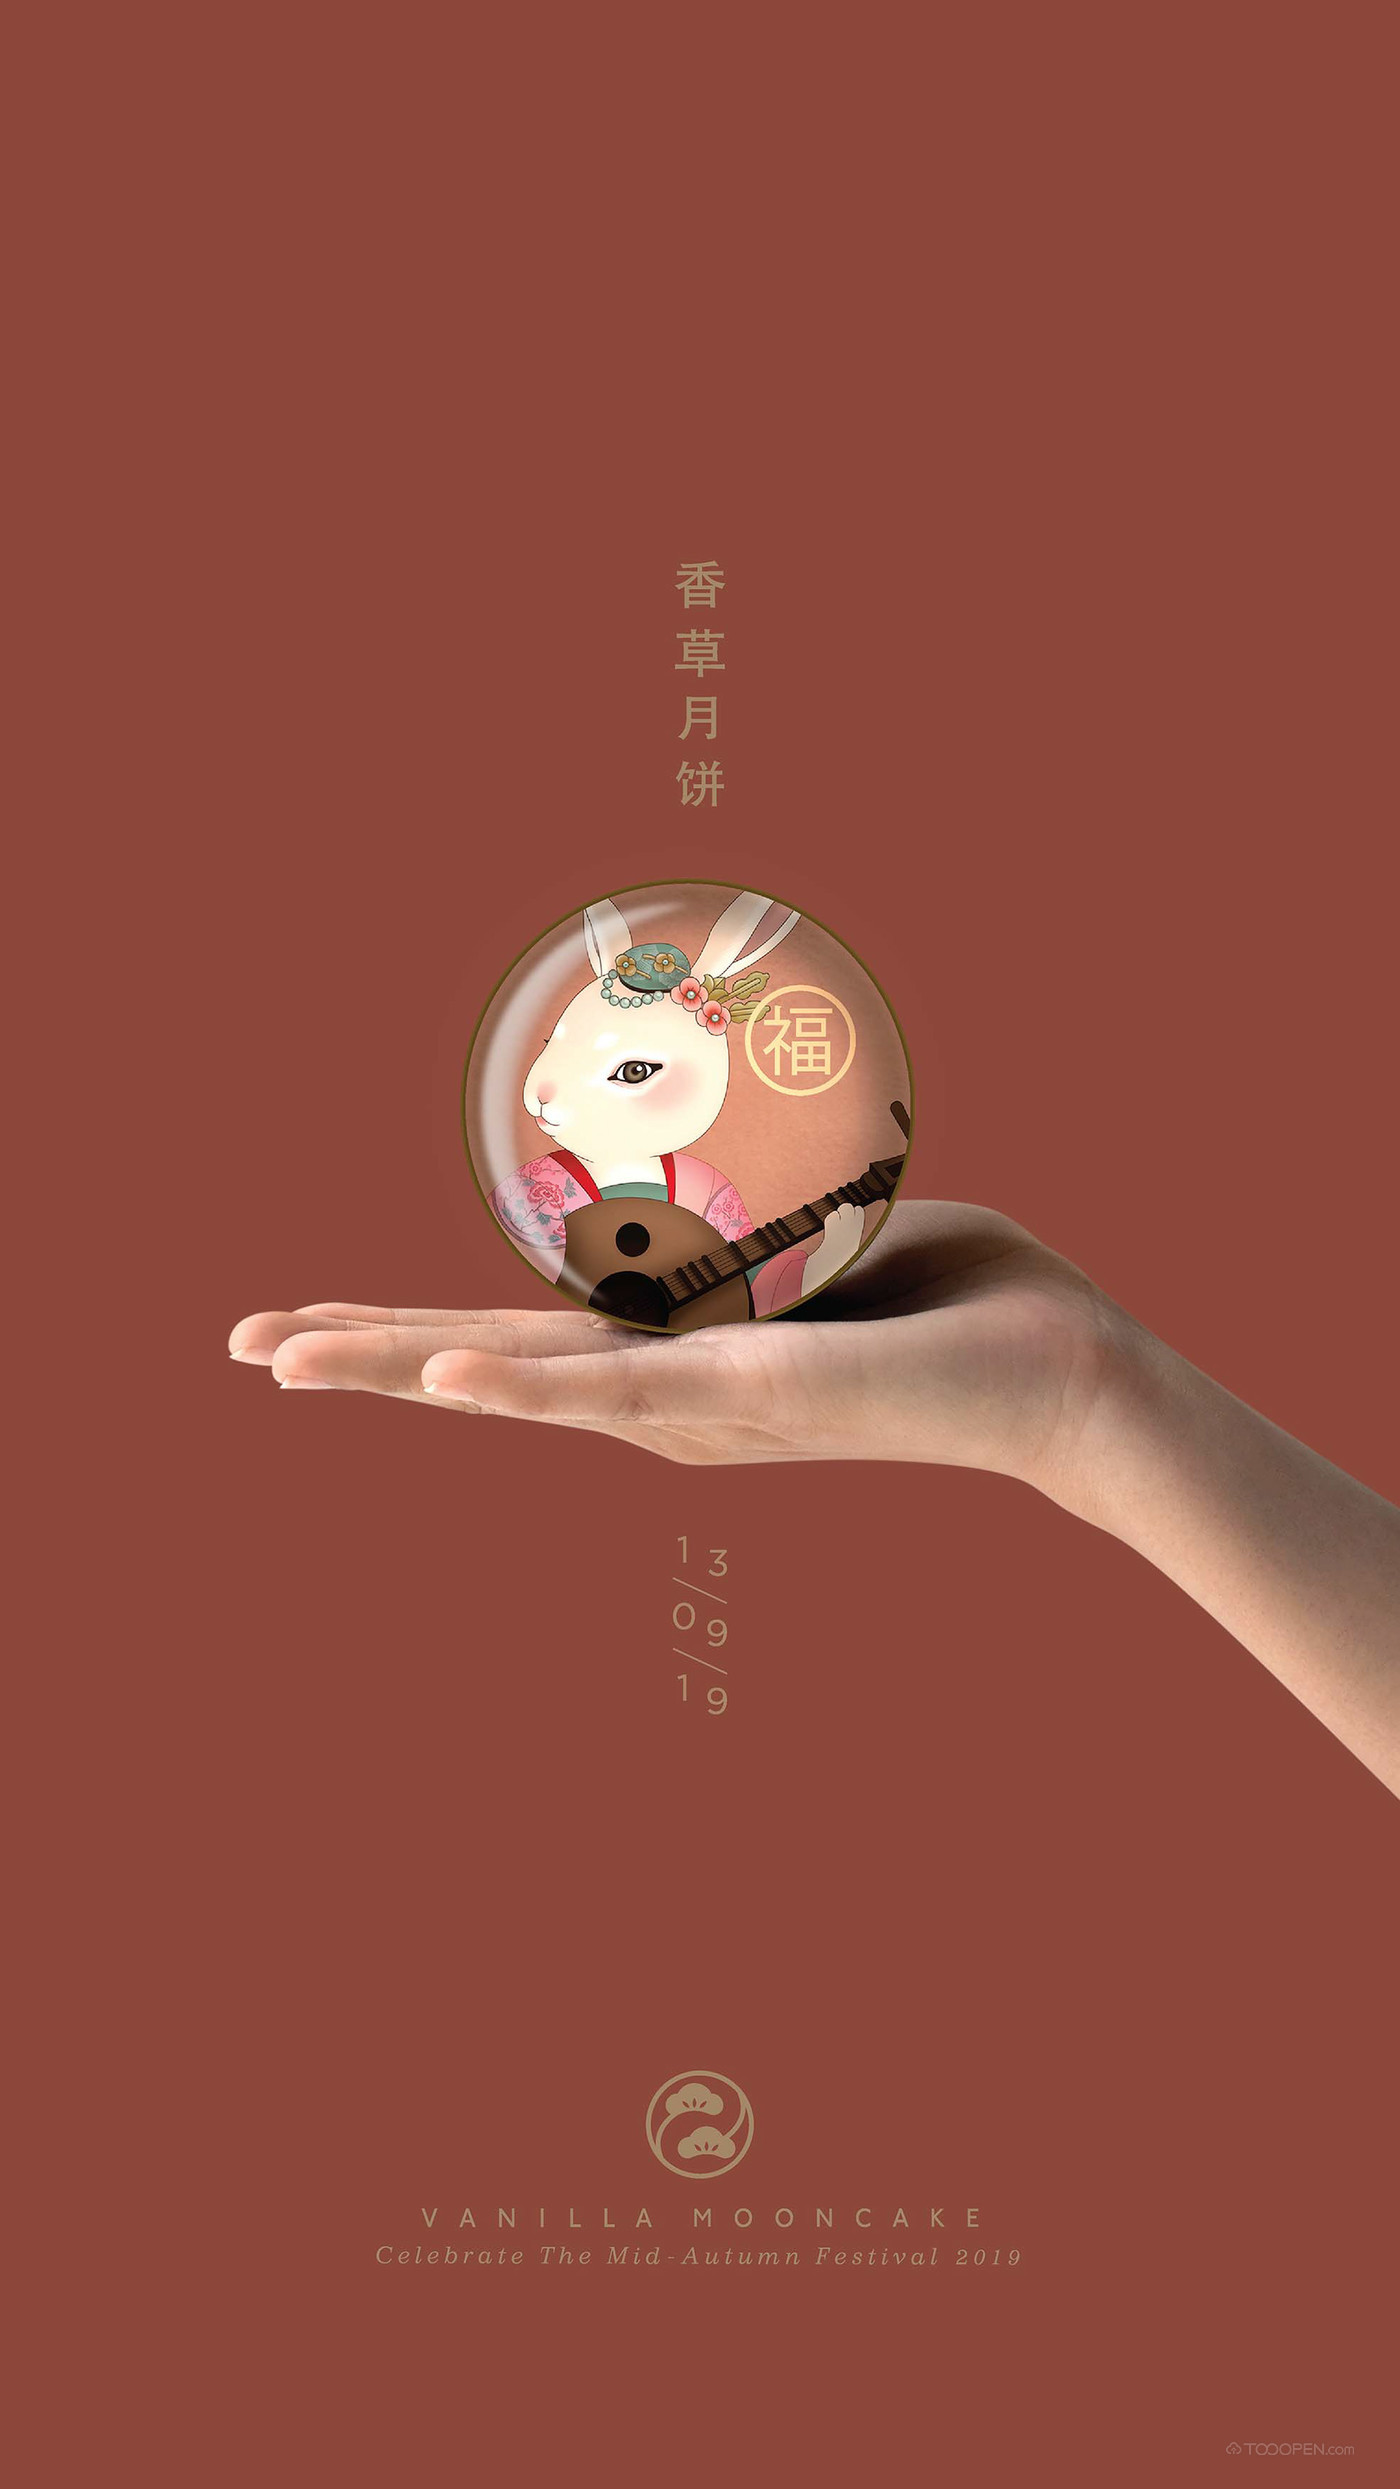 吉祥福寿中式月饼中秋佳节食品包装设计作品欣赏-10